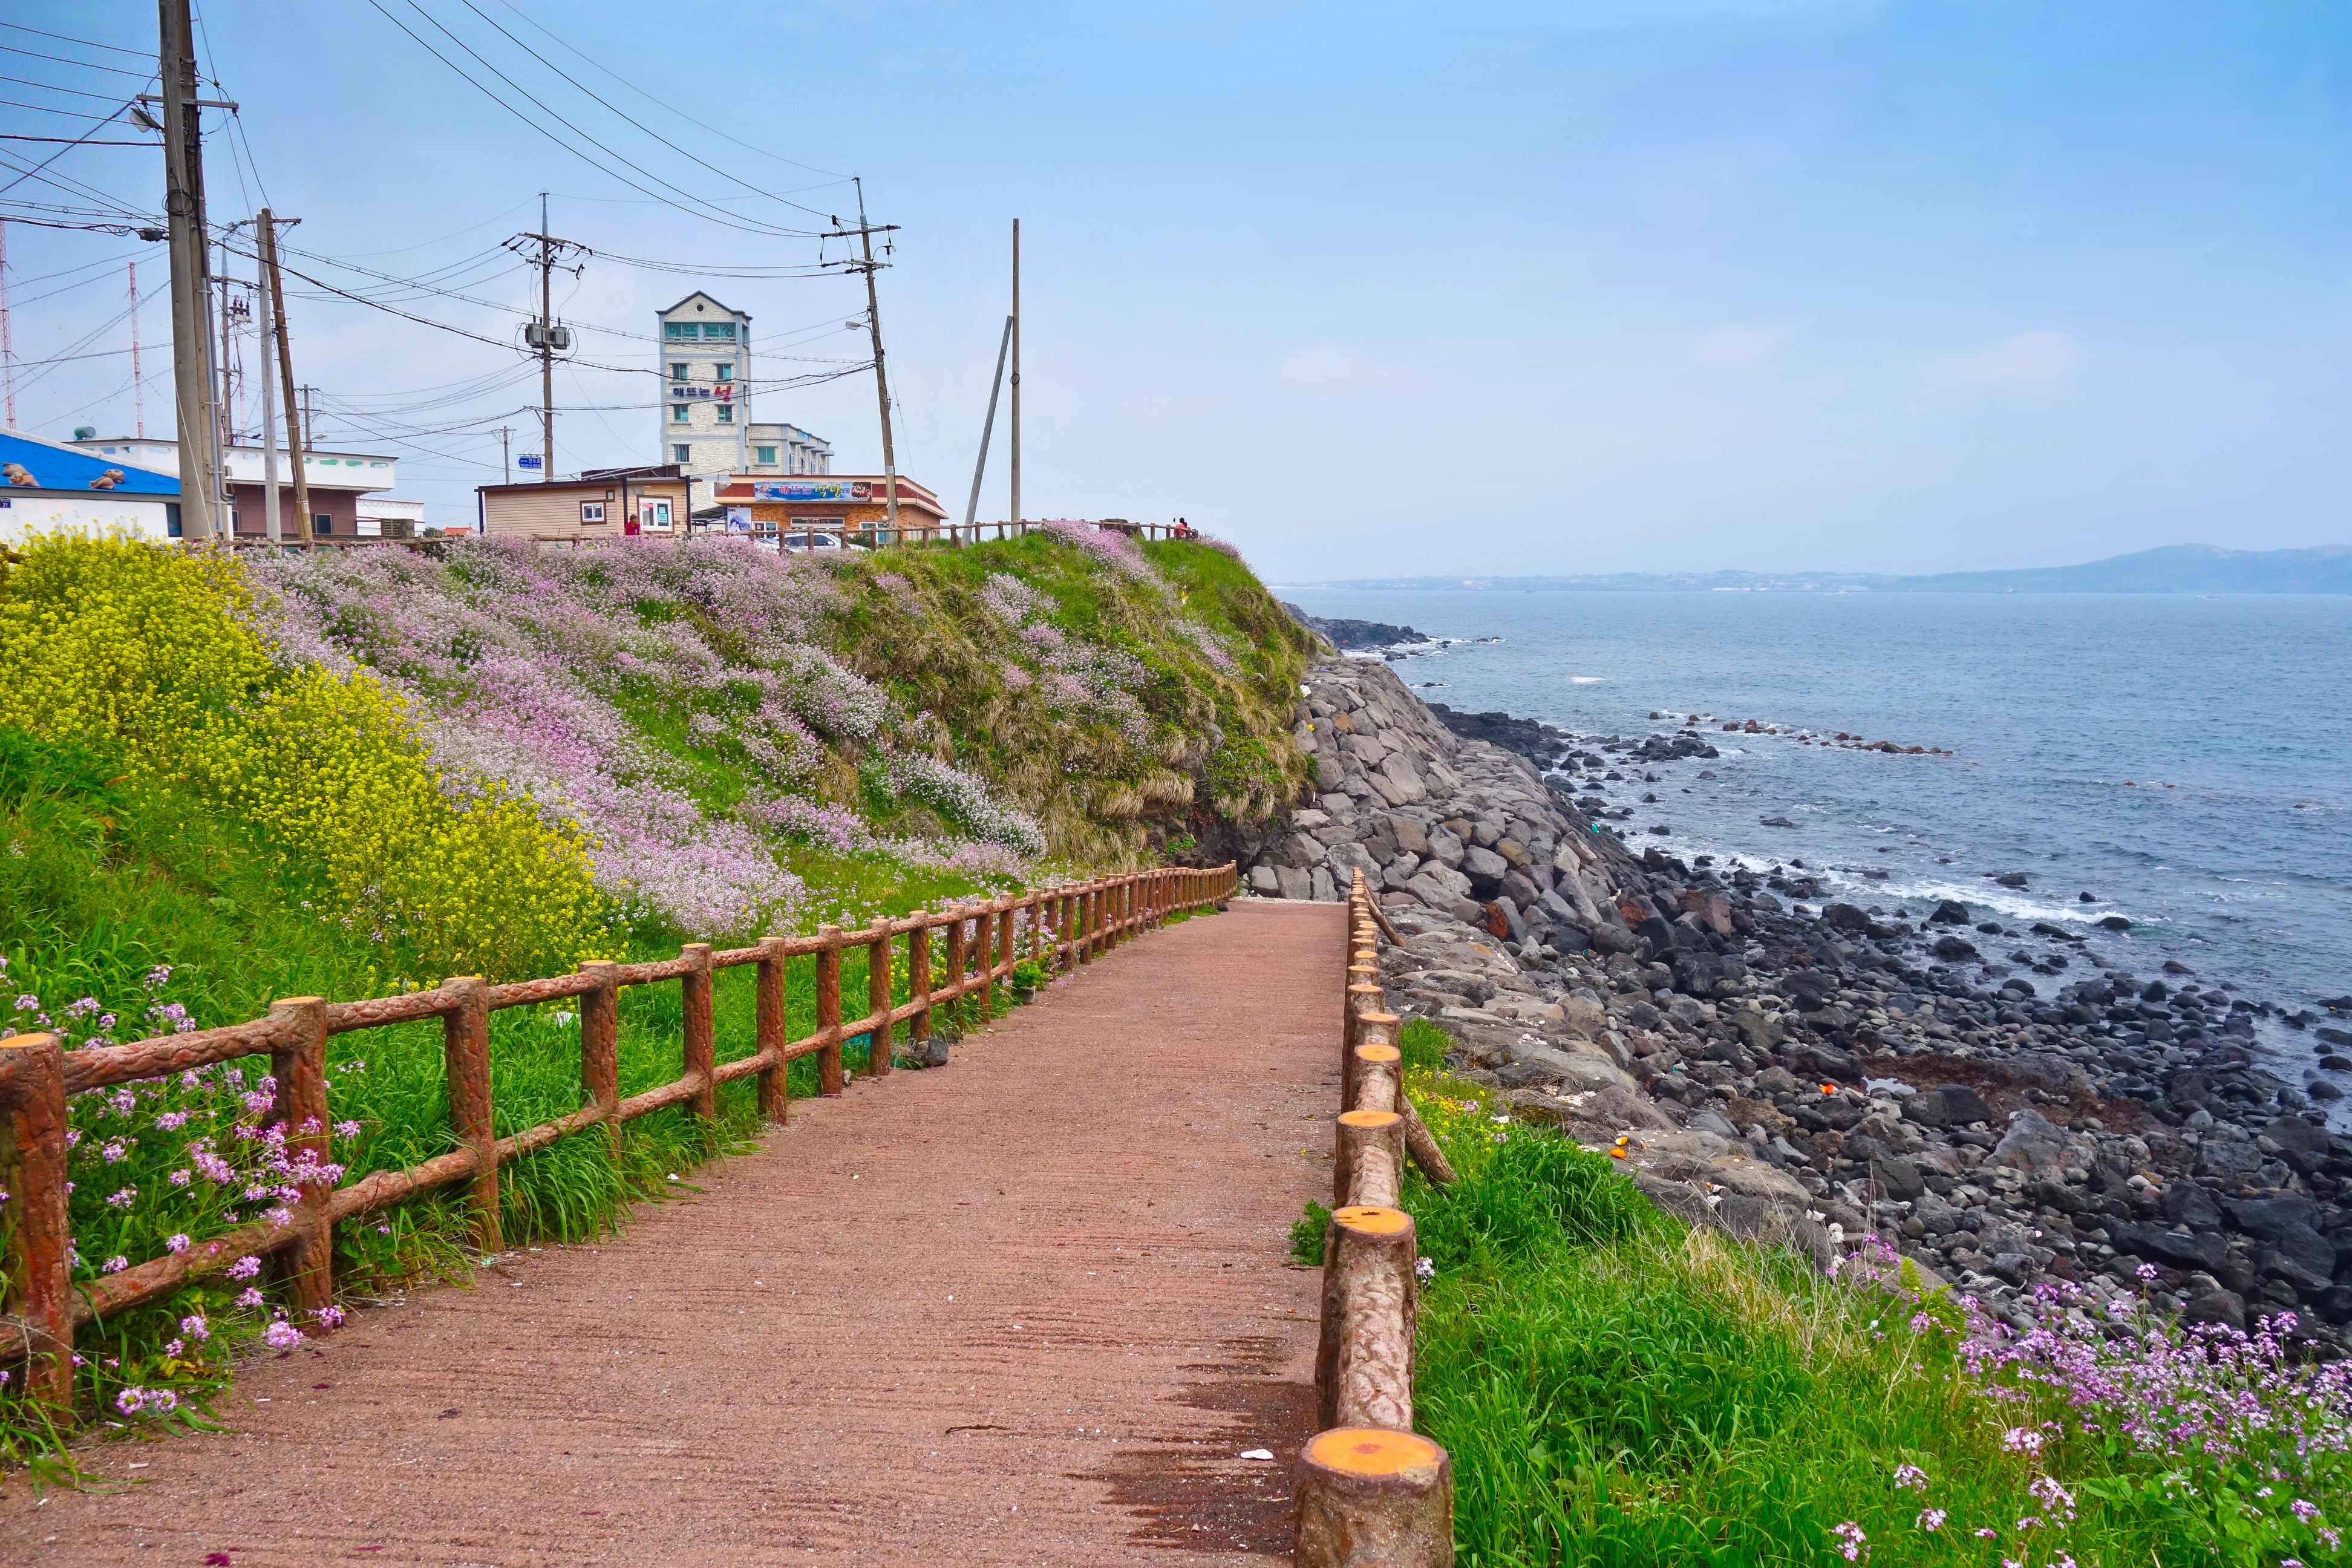 偶来小路是韩国济州的著名景点,被誉为"最美丽平和的小路".